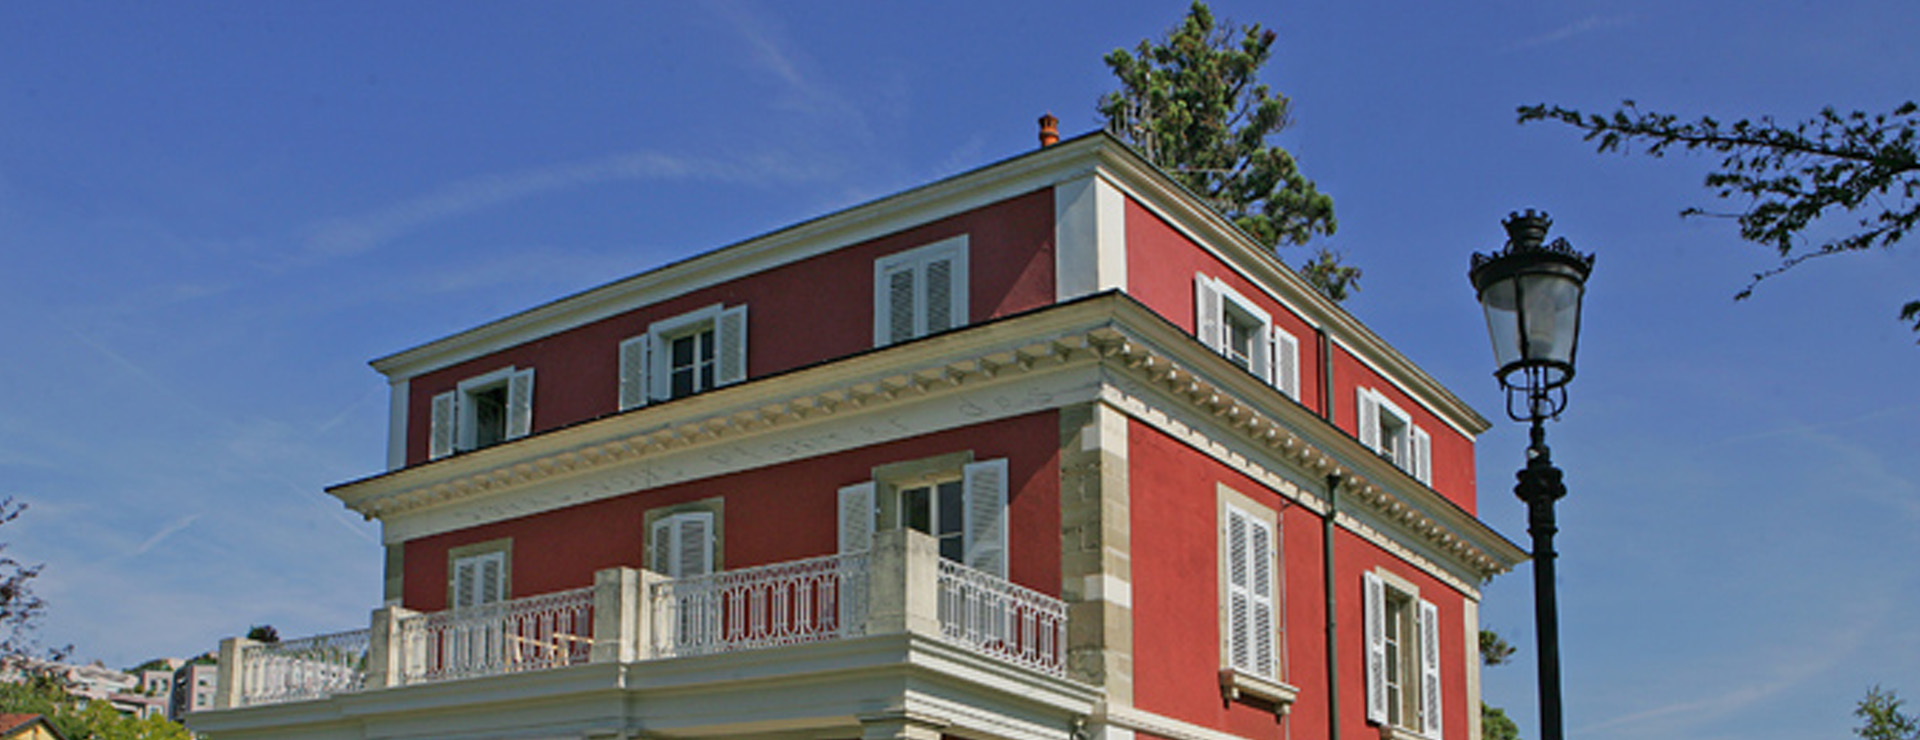 Villa Bernasconi